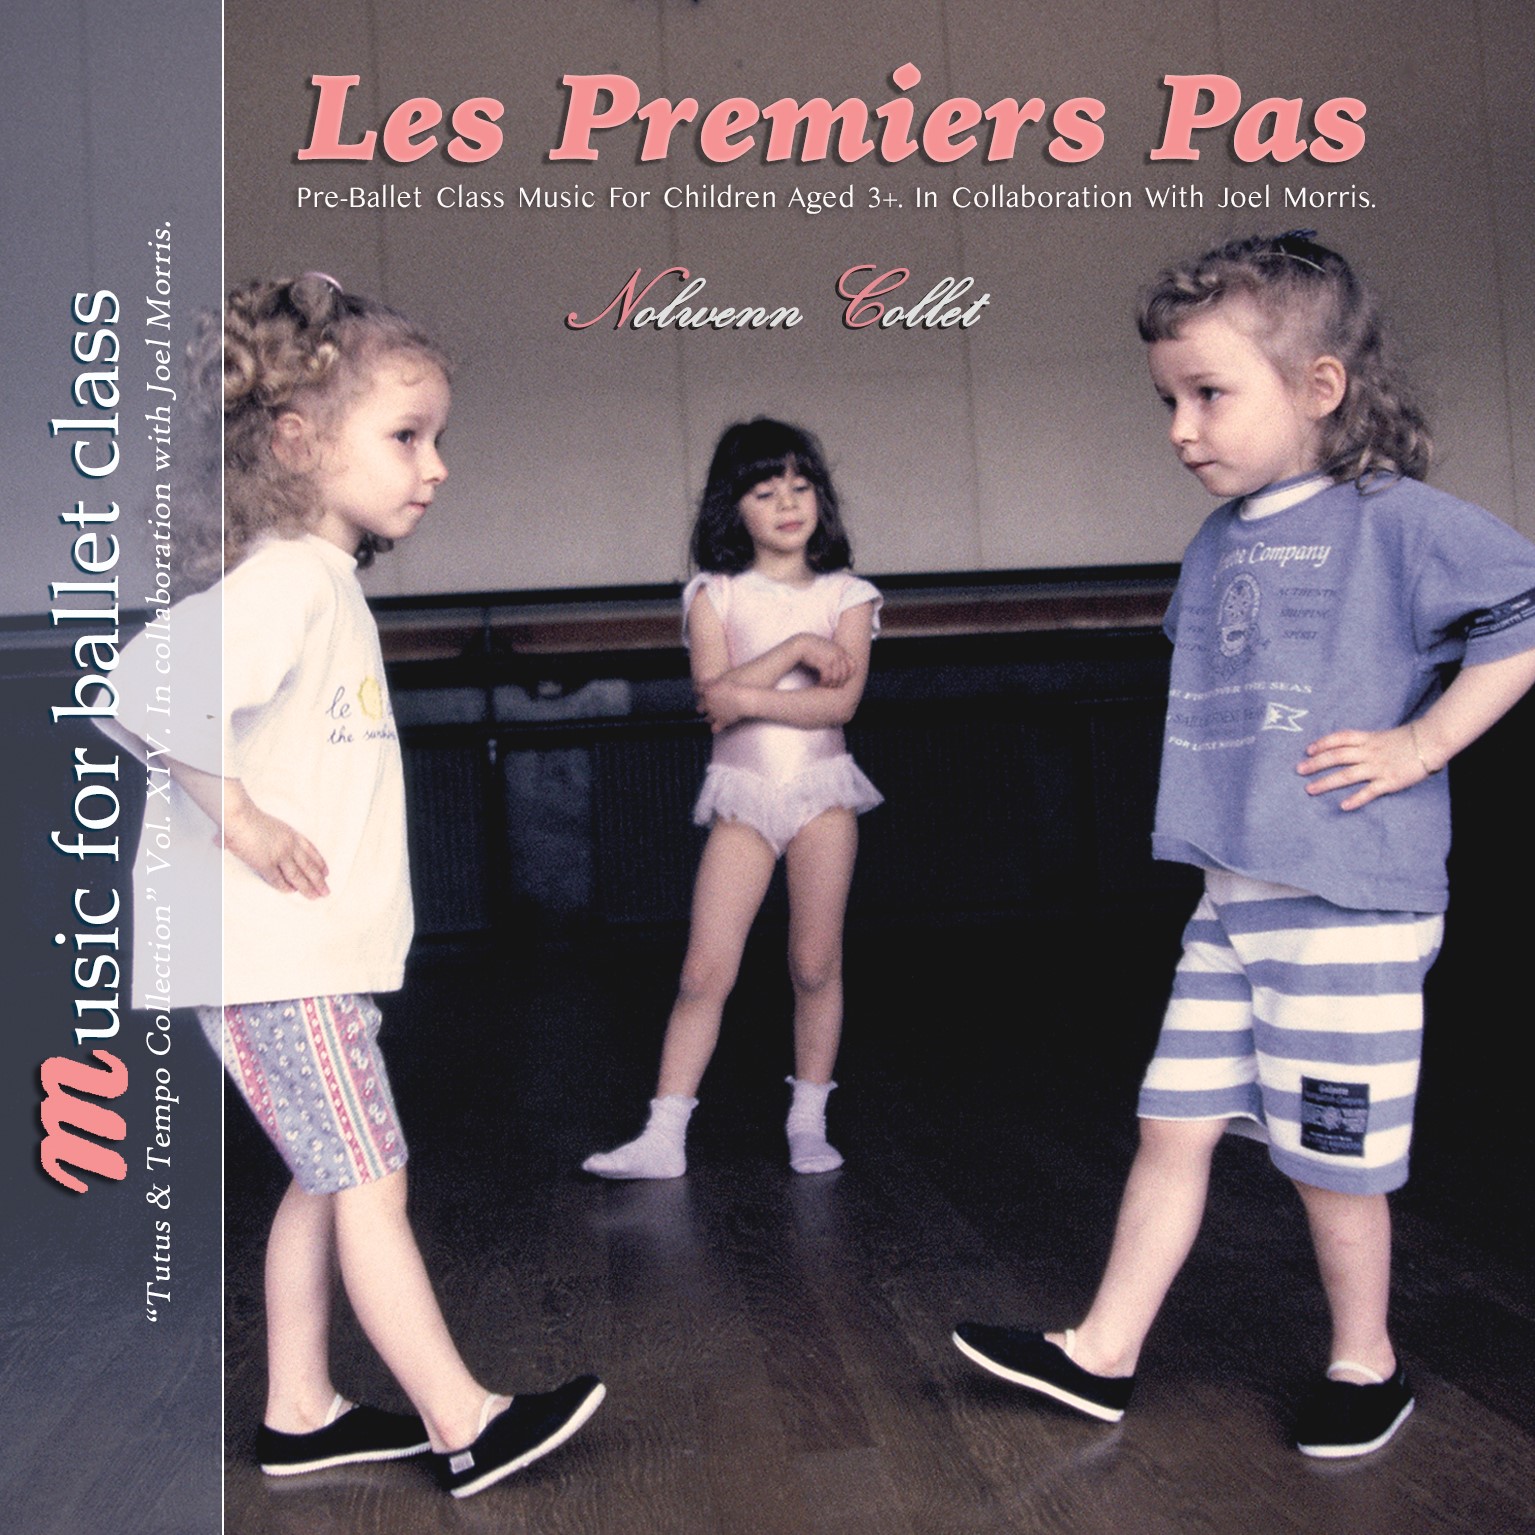 Les Premiers Pas - Pre-Ballet CD by Nolwenn Collet